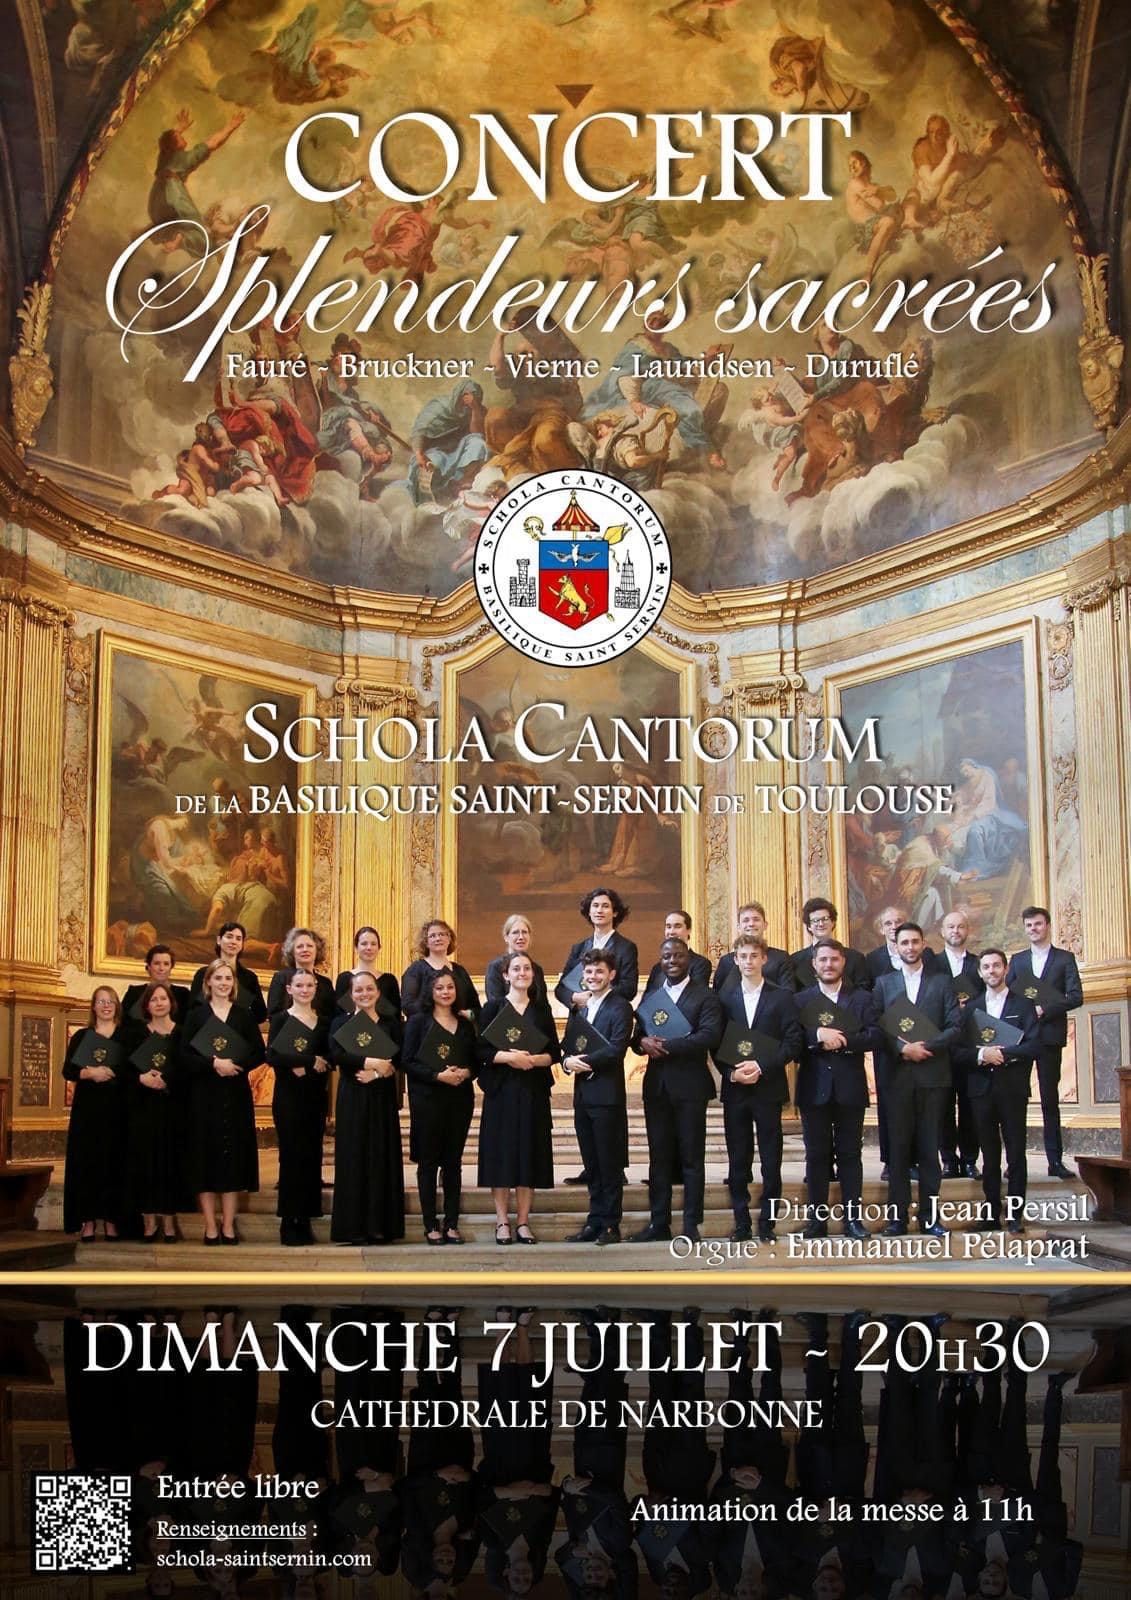 Schola Cantorum - Splendeurs sacrées - Cathédrale de Narbonne